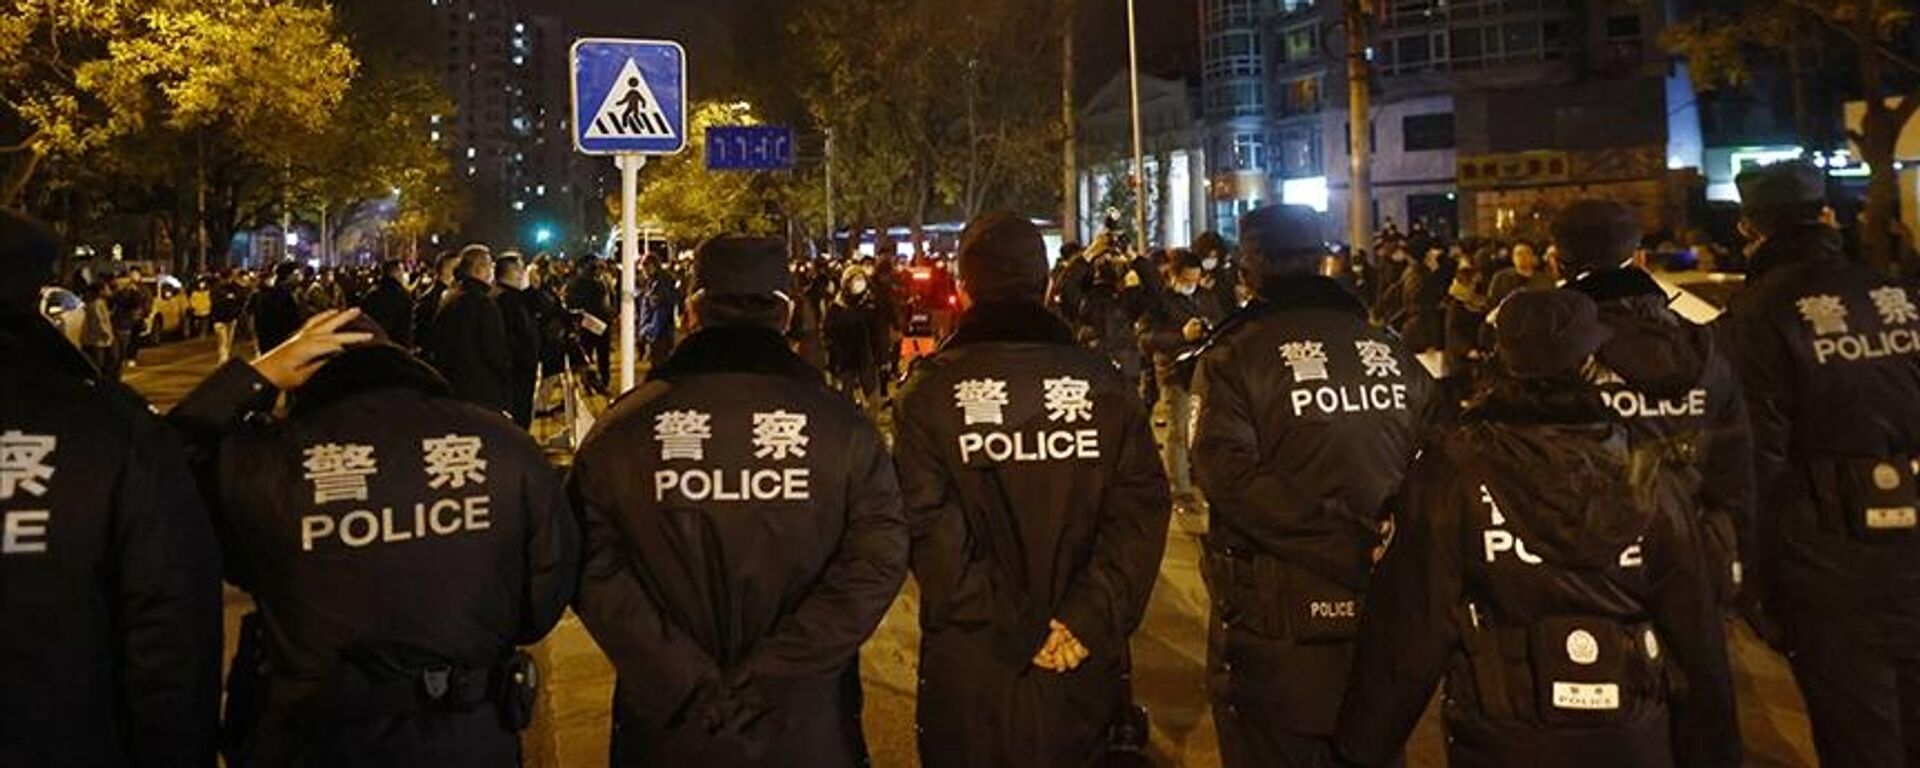 Çin'in başkenti Pekin'de sıfır Kovid politikasını protesto eden bir grubun etrafını çeviren polisler - Sputnik Türkiye, 1920, 28.11.2022